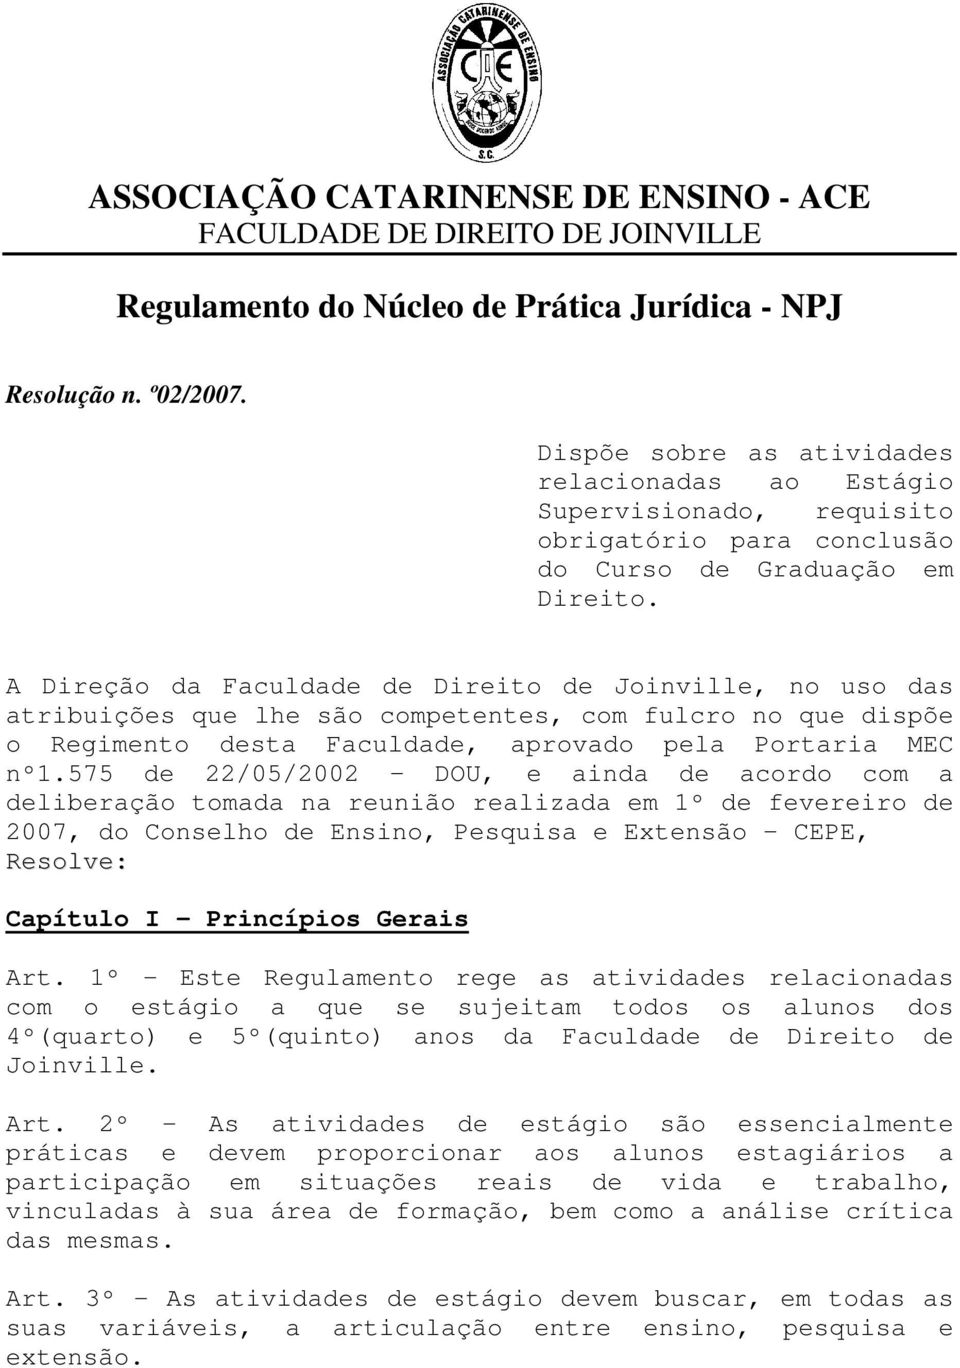 A Direção da Faculdade de Direito de Joinville, no uso das atribuições que lhe são competentes, com fulcro no que dispõe o Regimento desta Faculdade, aprovado pela Portaria MEC nº1.